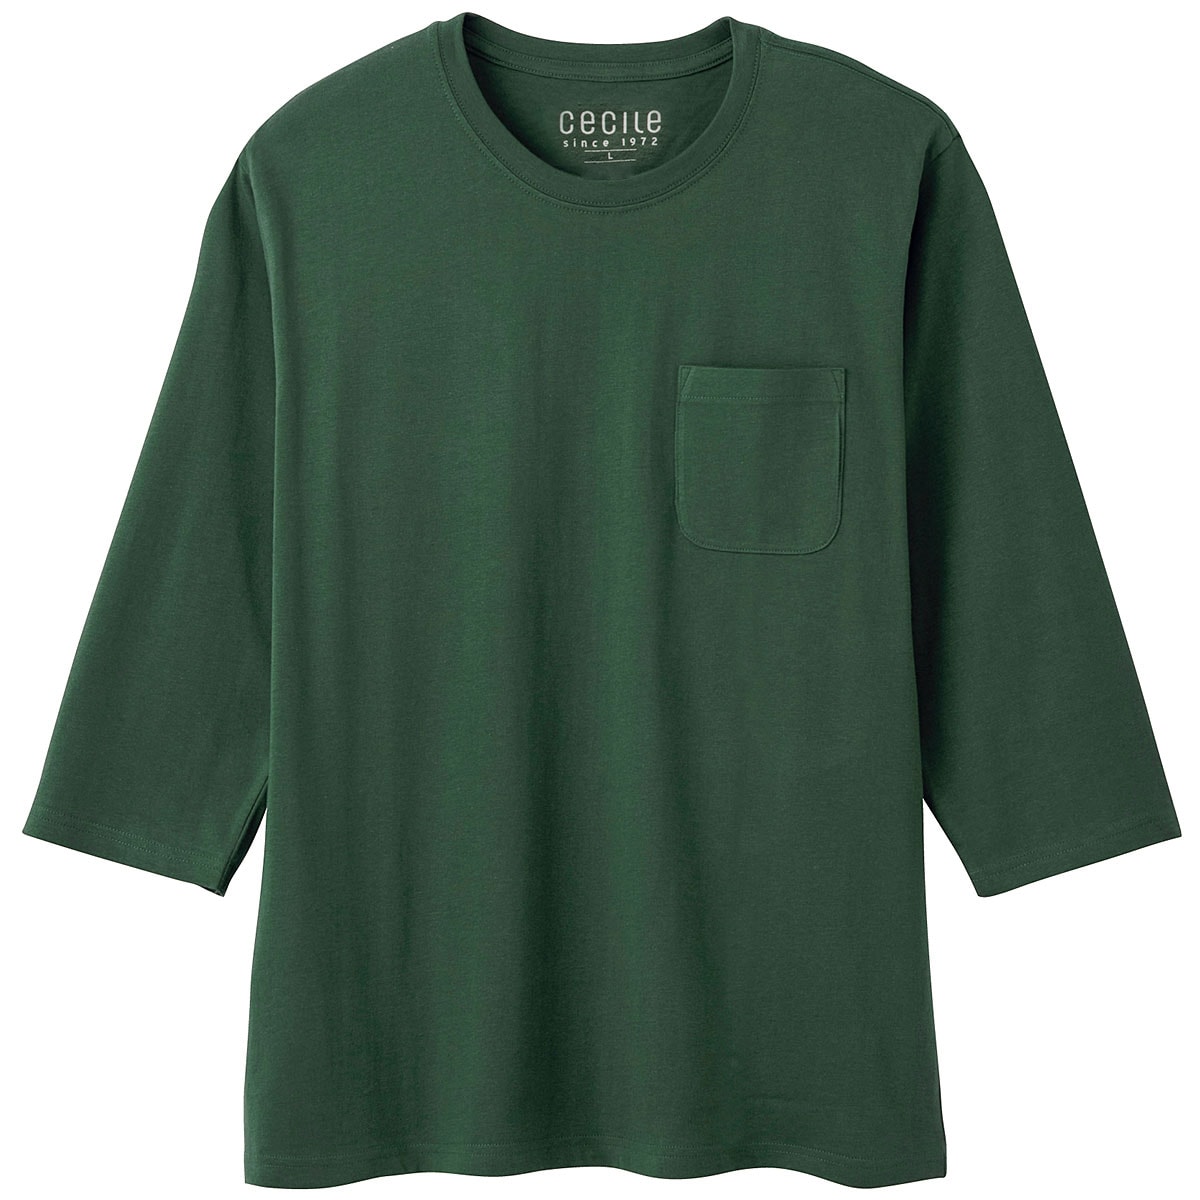 男女兼用】綿100%クルーネックTシャツ(7分袖) ファッション通販ならセシール(cecile)